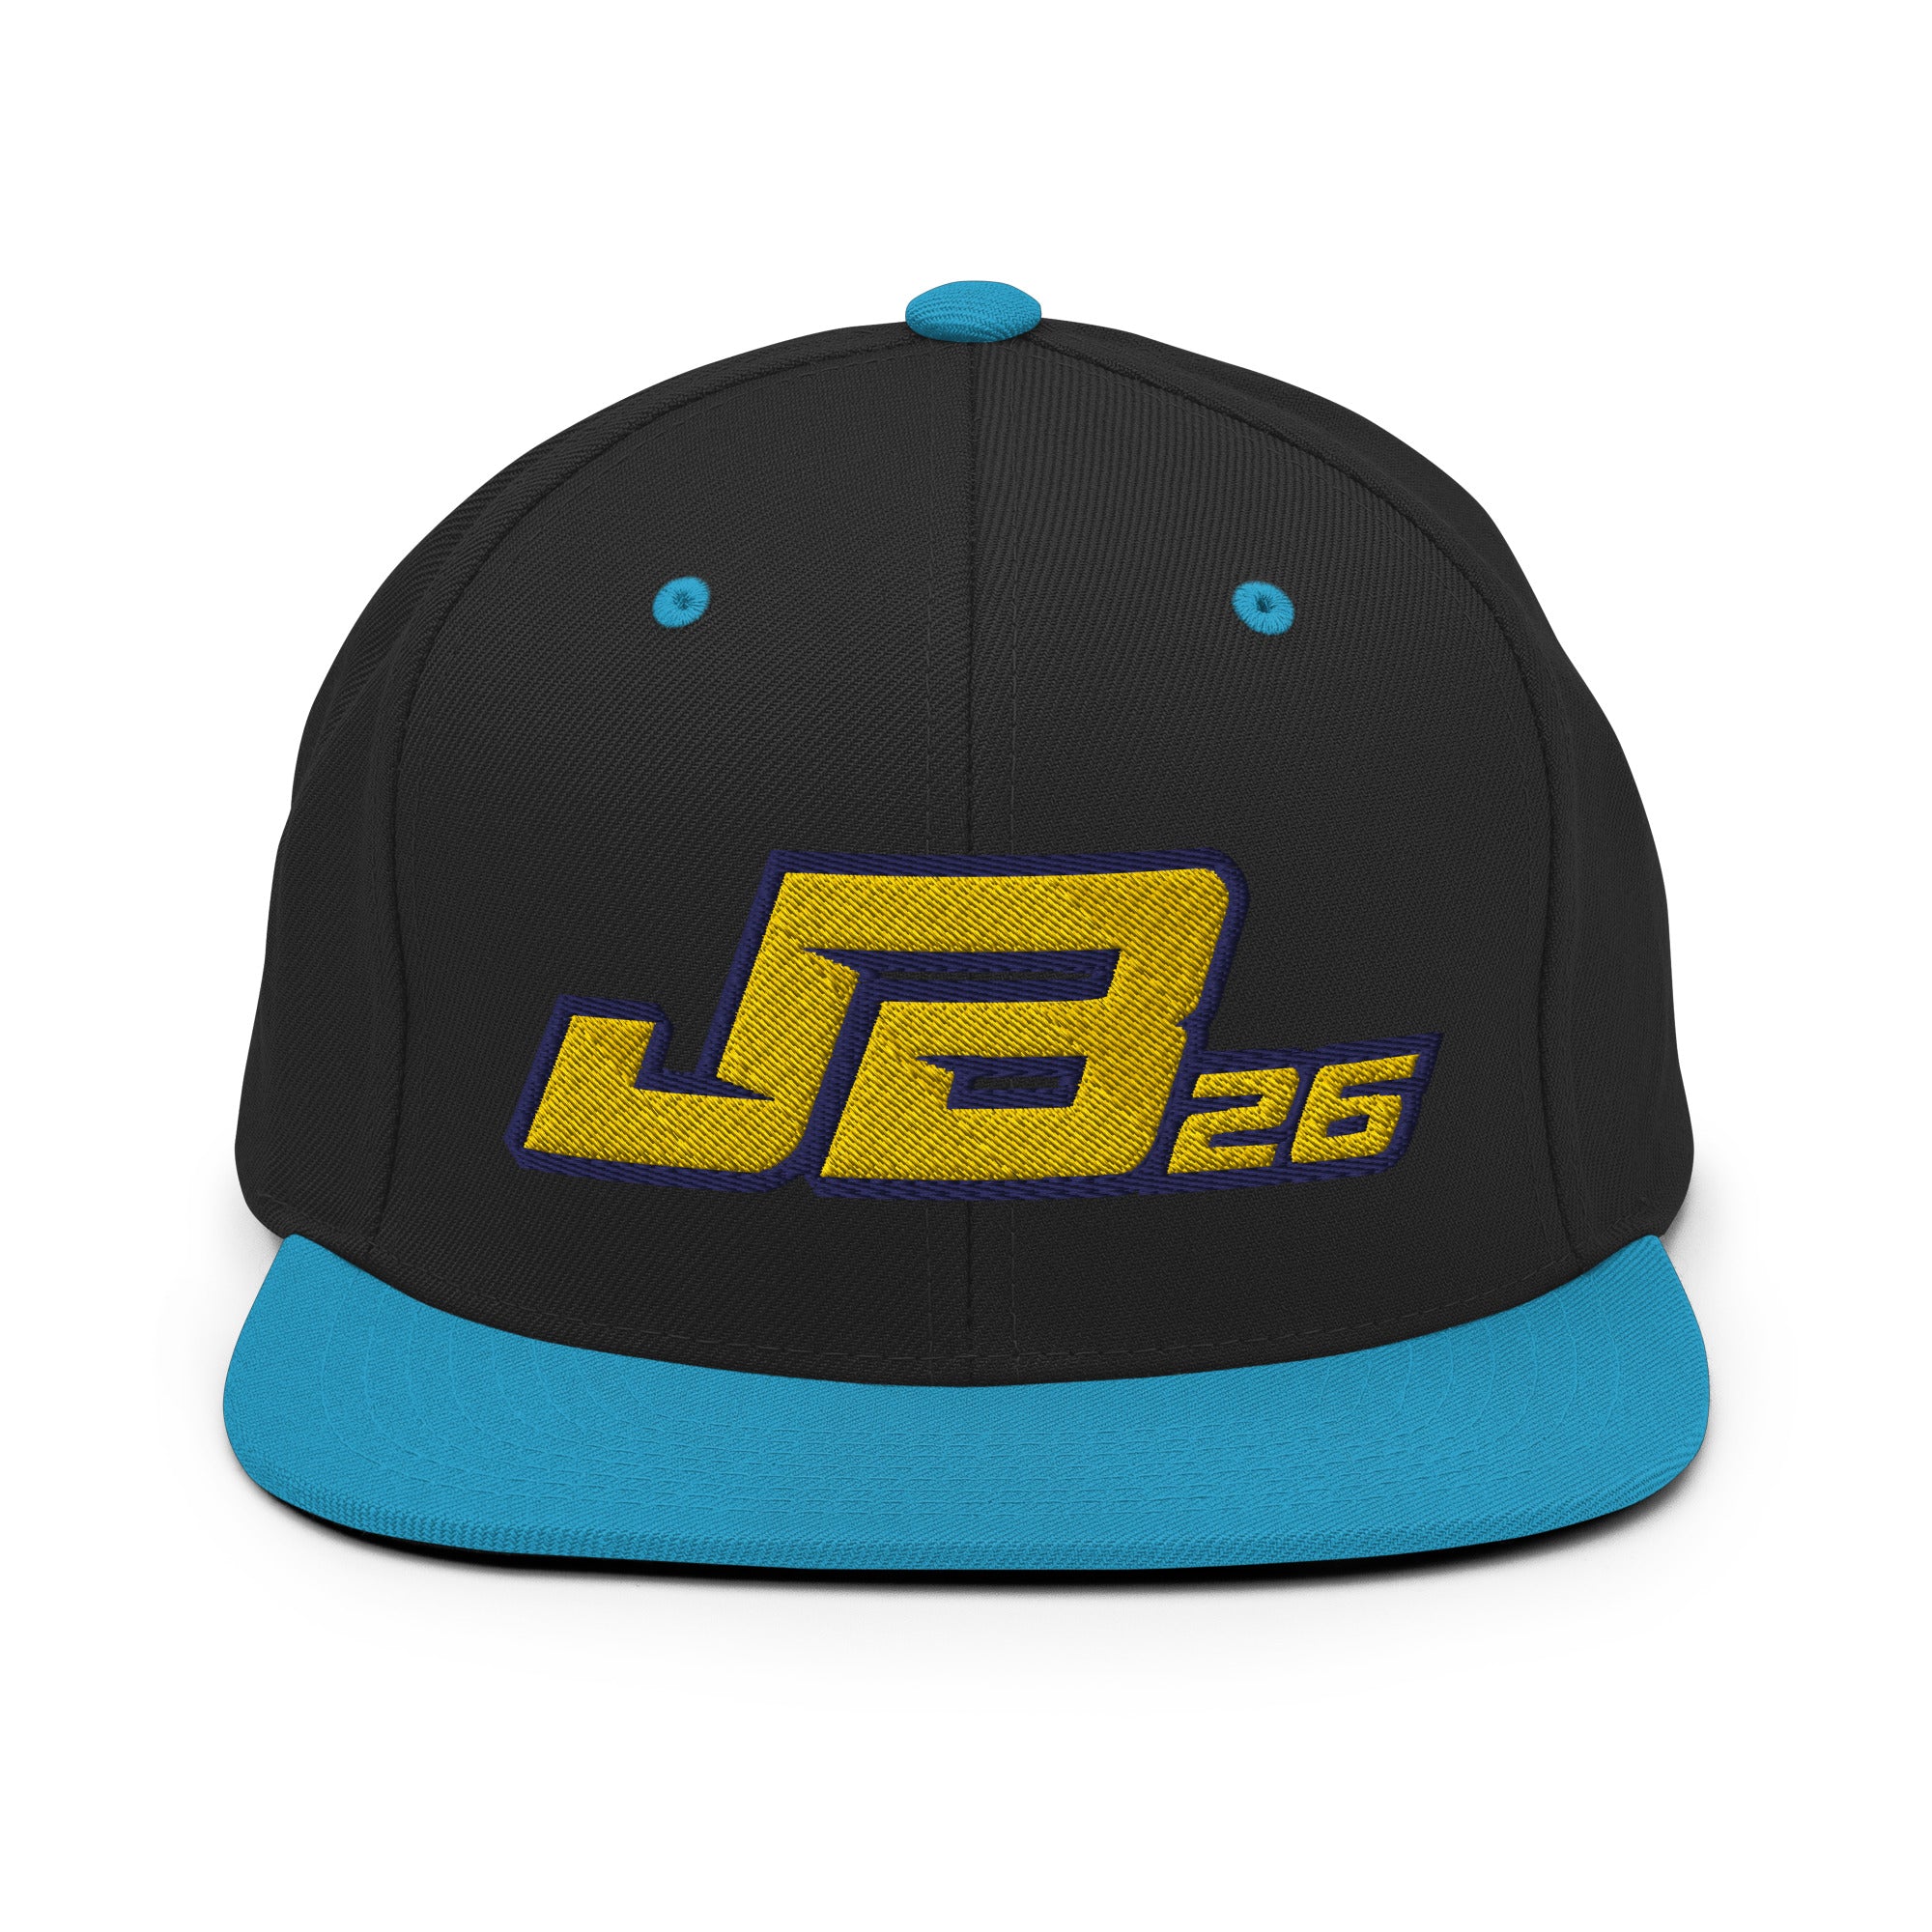 JB Awolowo '26 BRAND SNAPBACK HAT